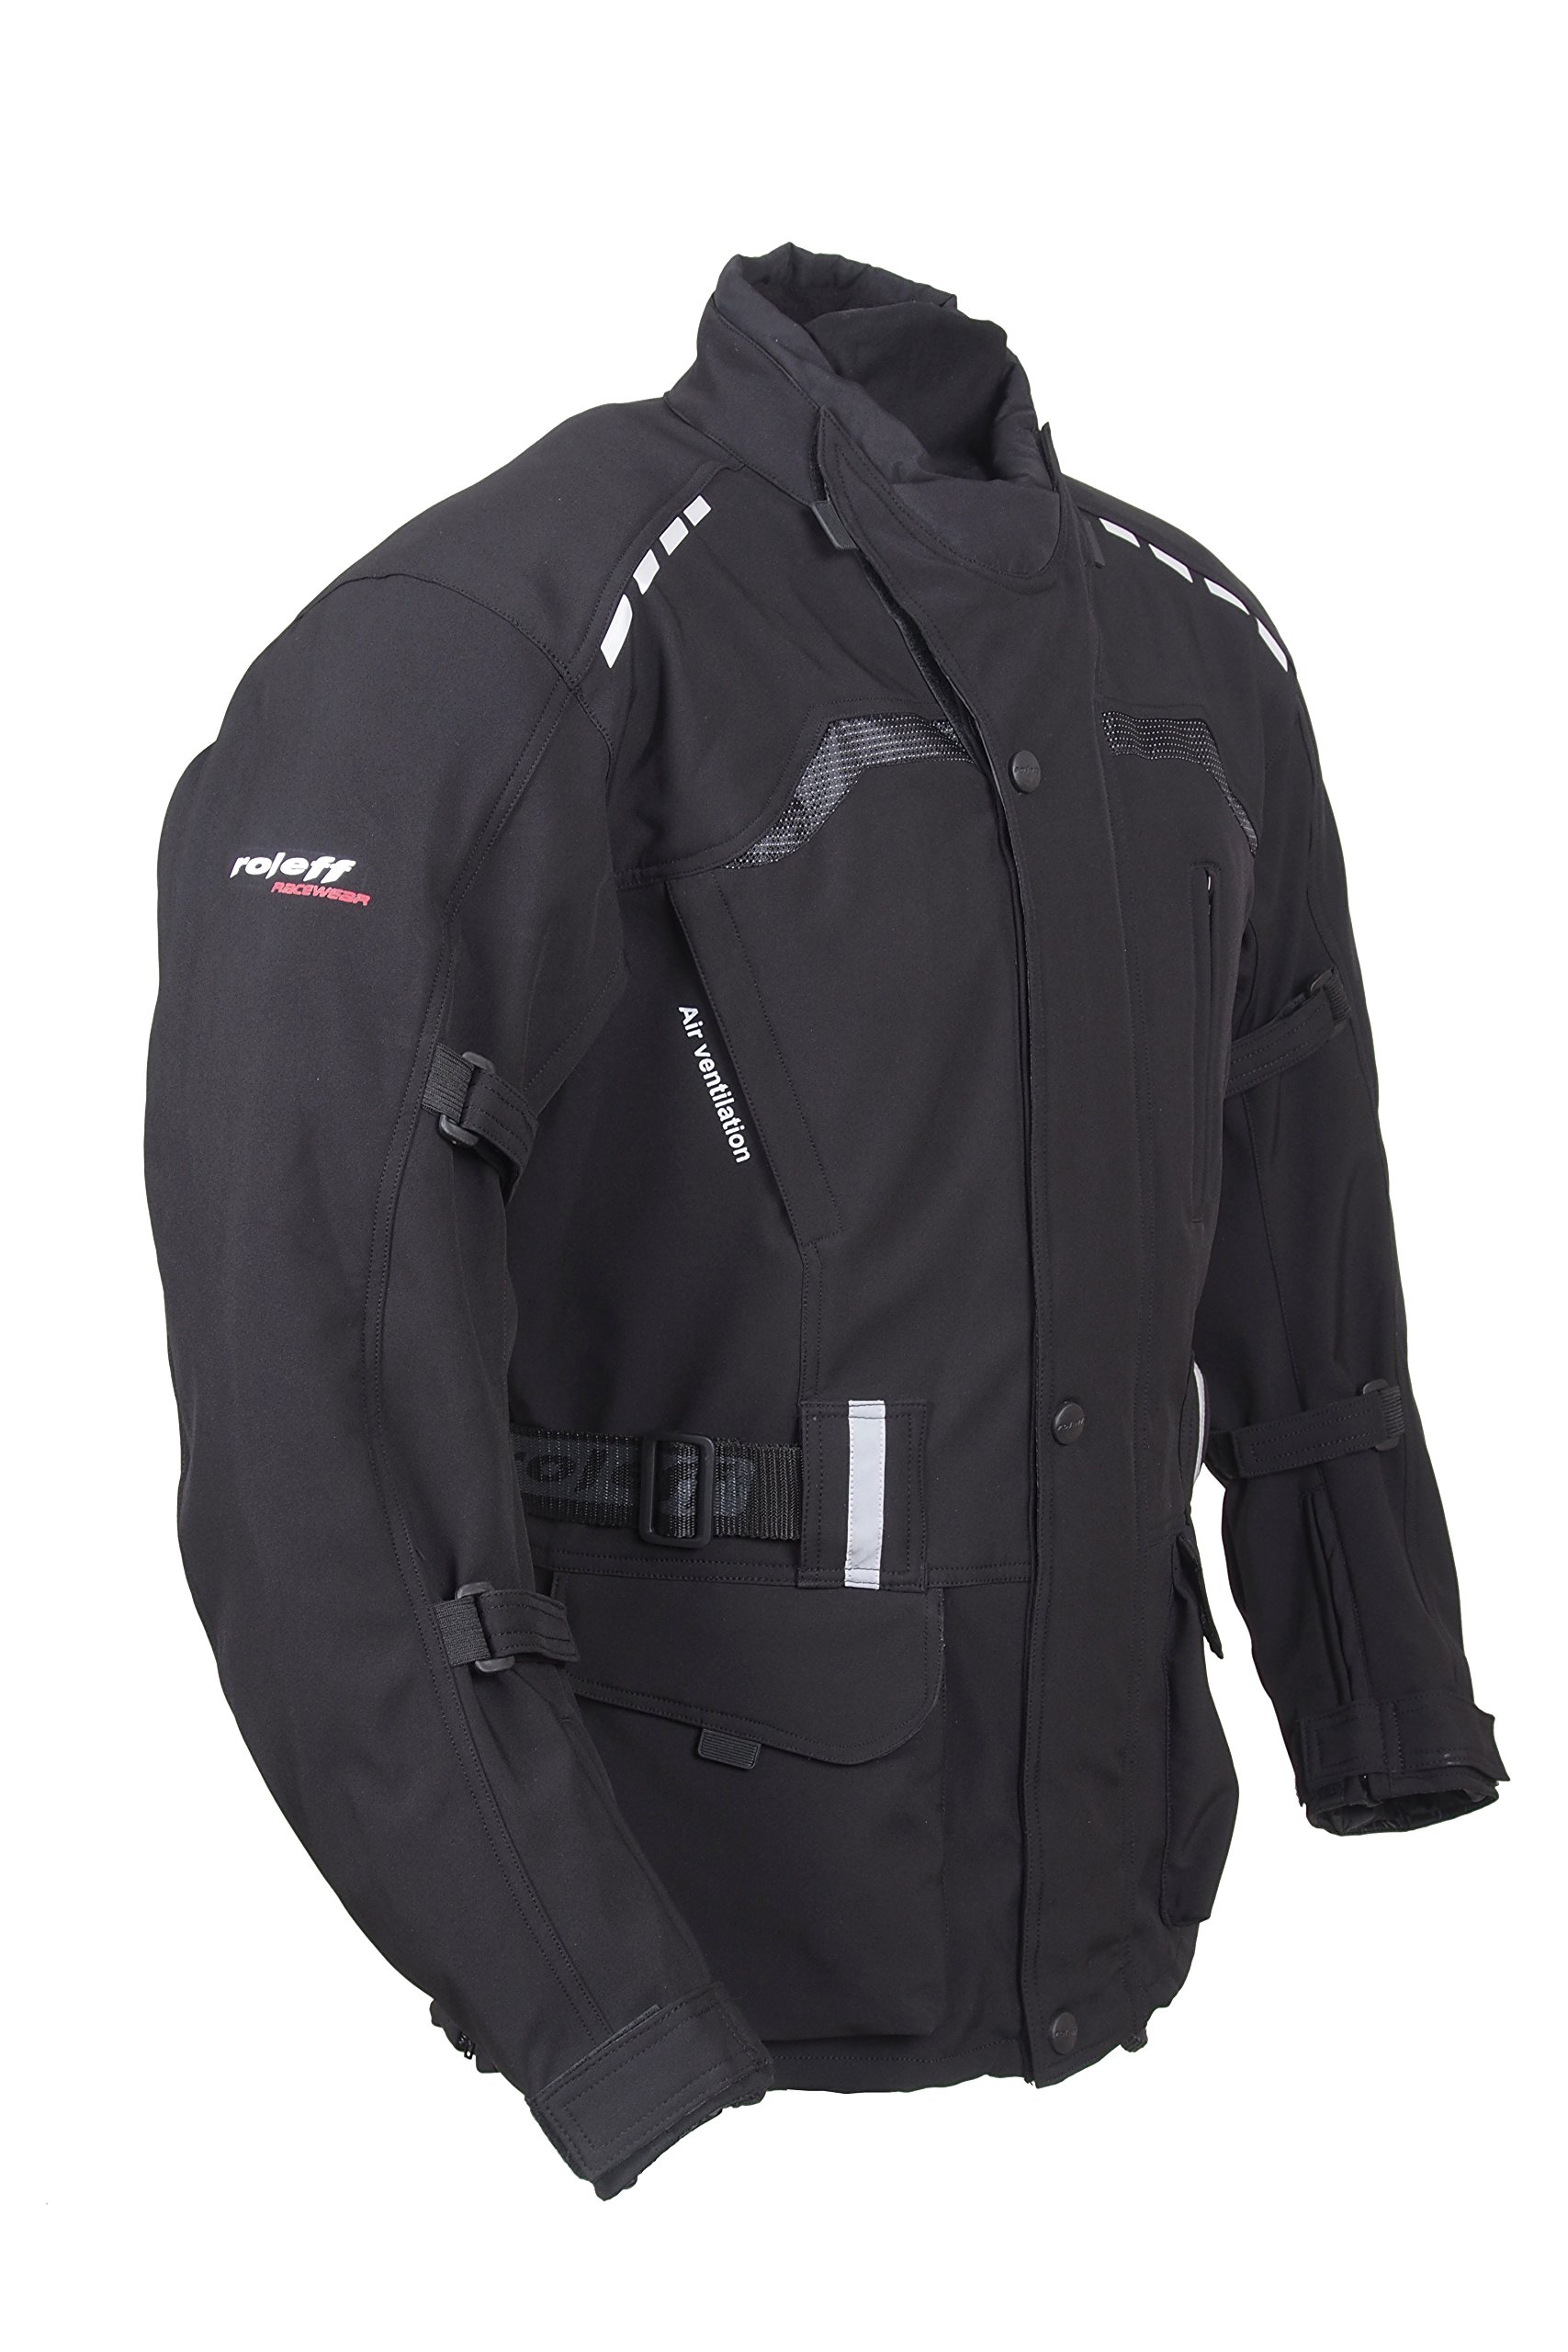 Roleff Racewear Lange, schwarze Motorradjacke mit Softshell Material, Protektoren, Belüftungssystem, Klimamembrane und herausnehmbarem Thermofutter von Roleff Racewear